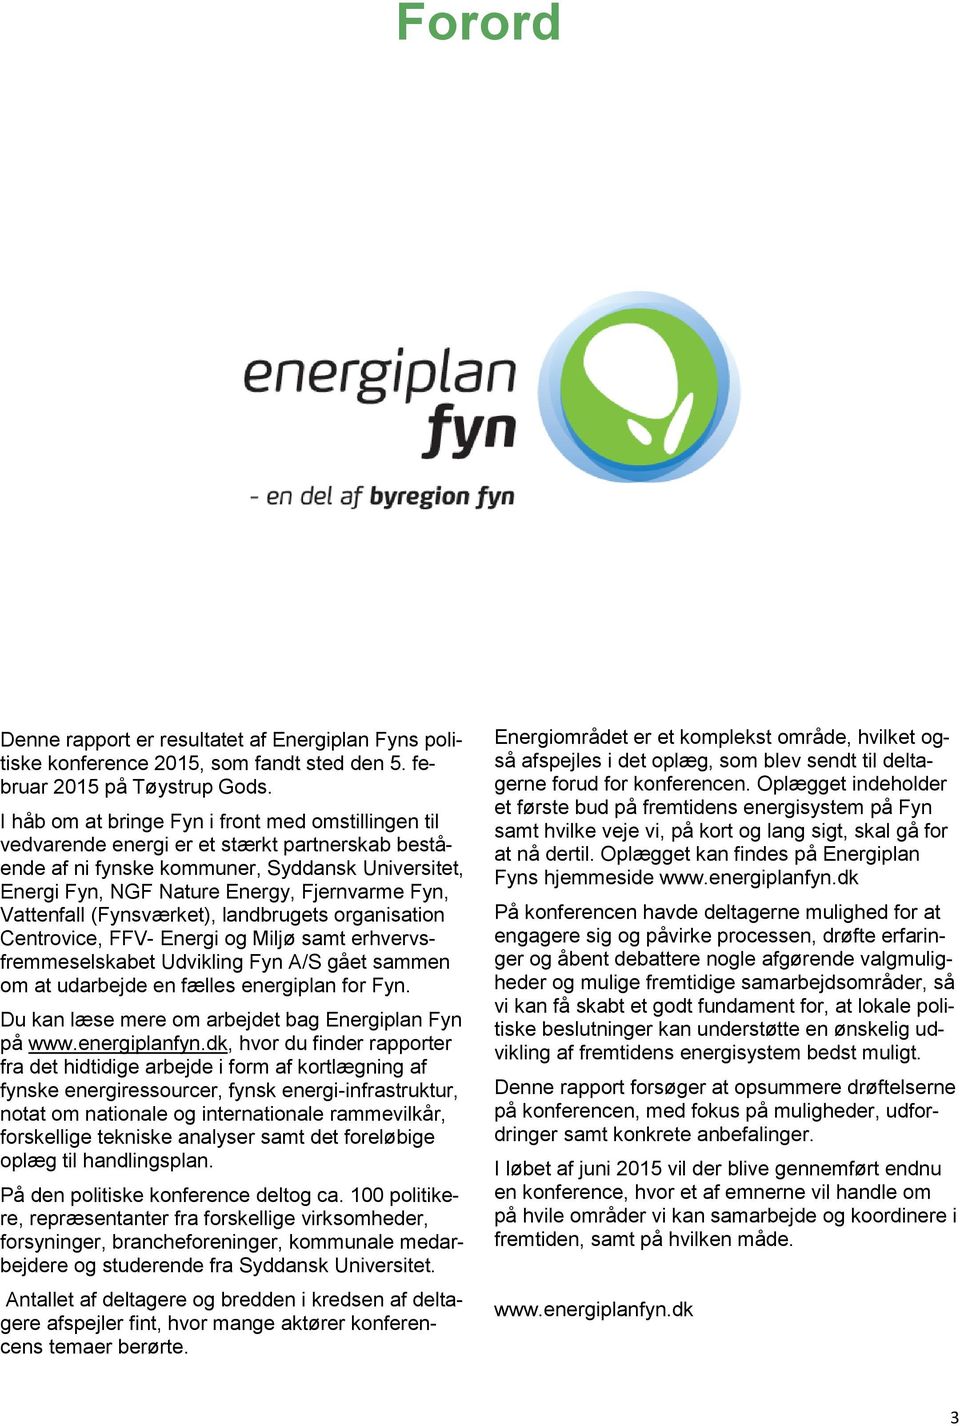 Vattenfall (Fynsværket), landbrugets organisation Centrovice, FFV- Energi og Miljø samt erhvervsfremmeselskabet Udvikling Fyn A/S gået sammen om at udarbejde en fælles energiplan for Fyn.